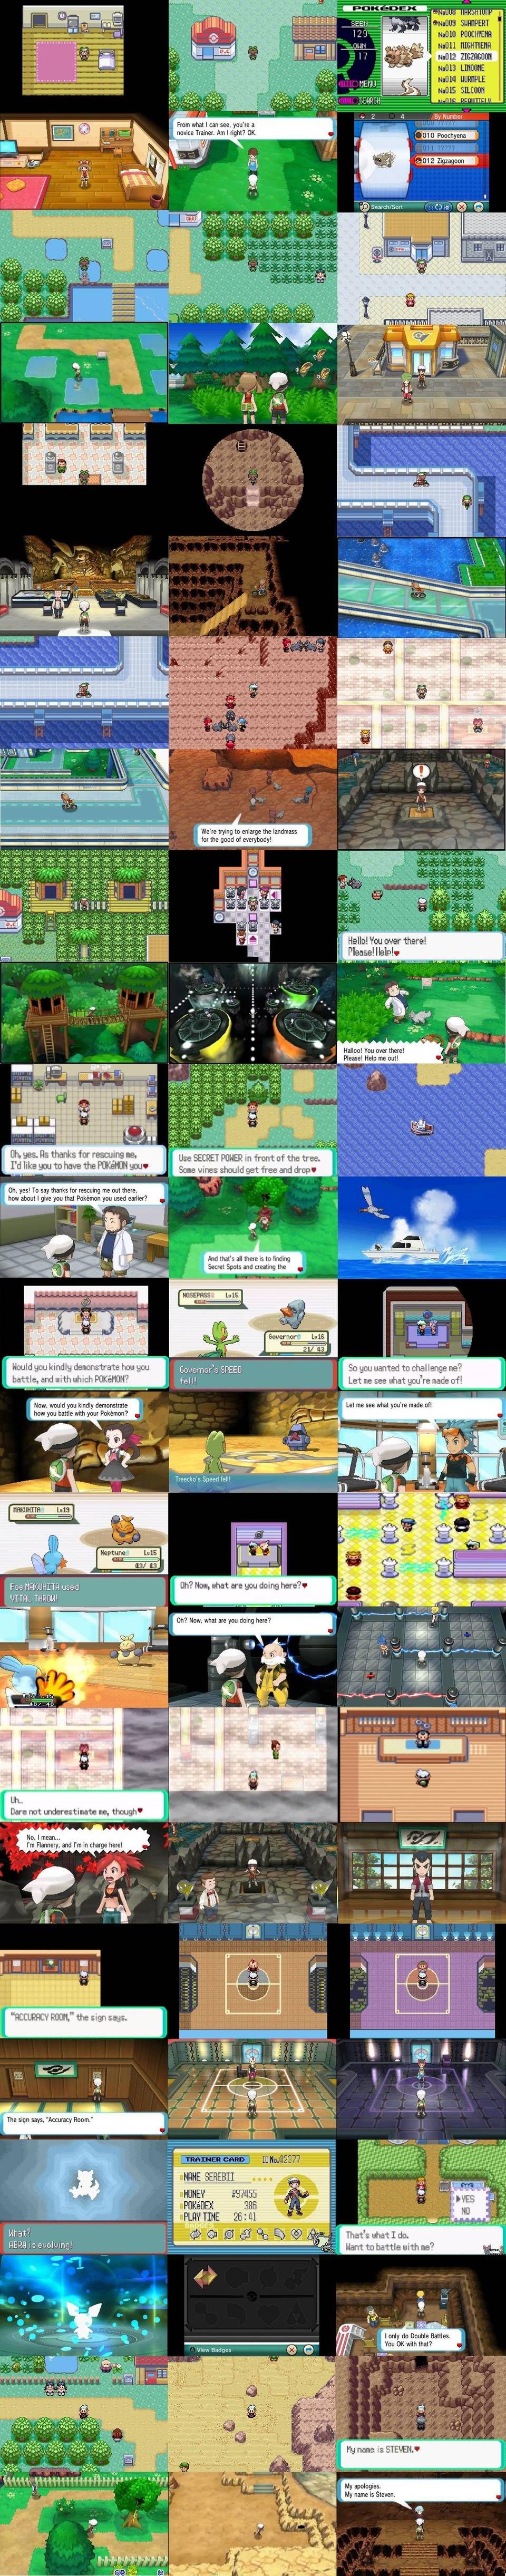 Pokémon-Rubis-Oméga-Saphir-Alpha_21-07-2014_comparaison-GBA